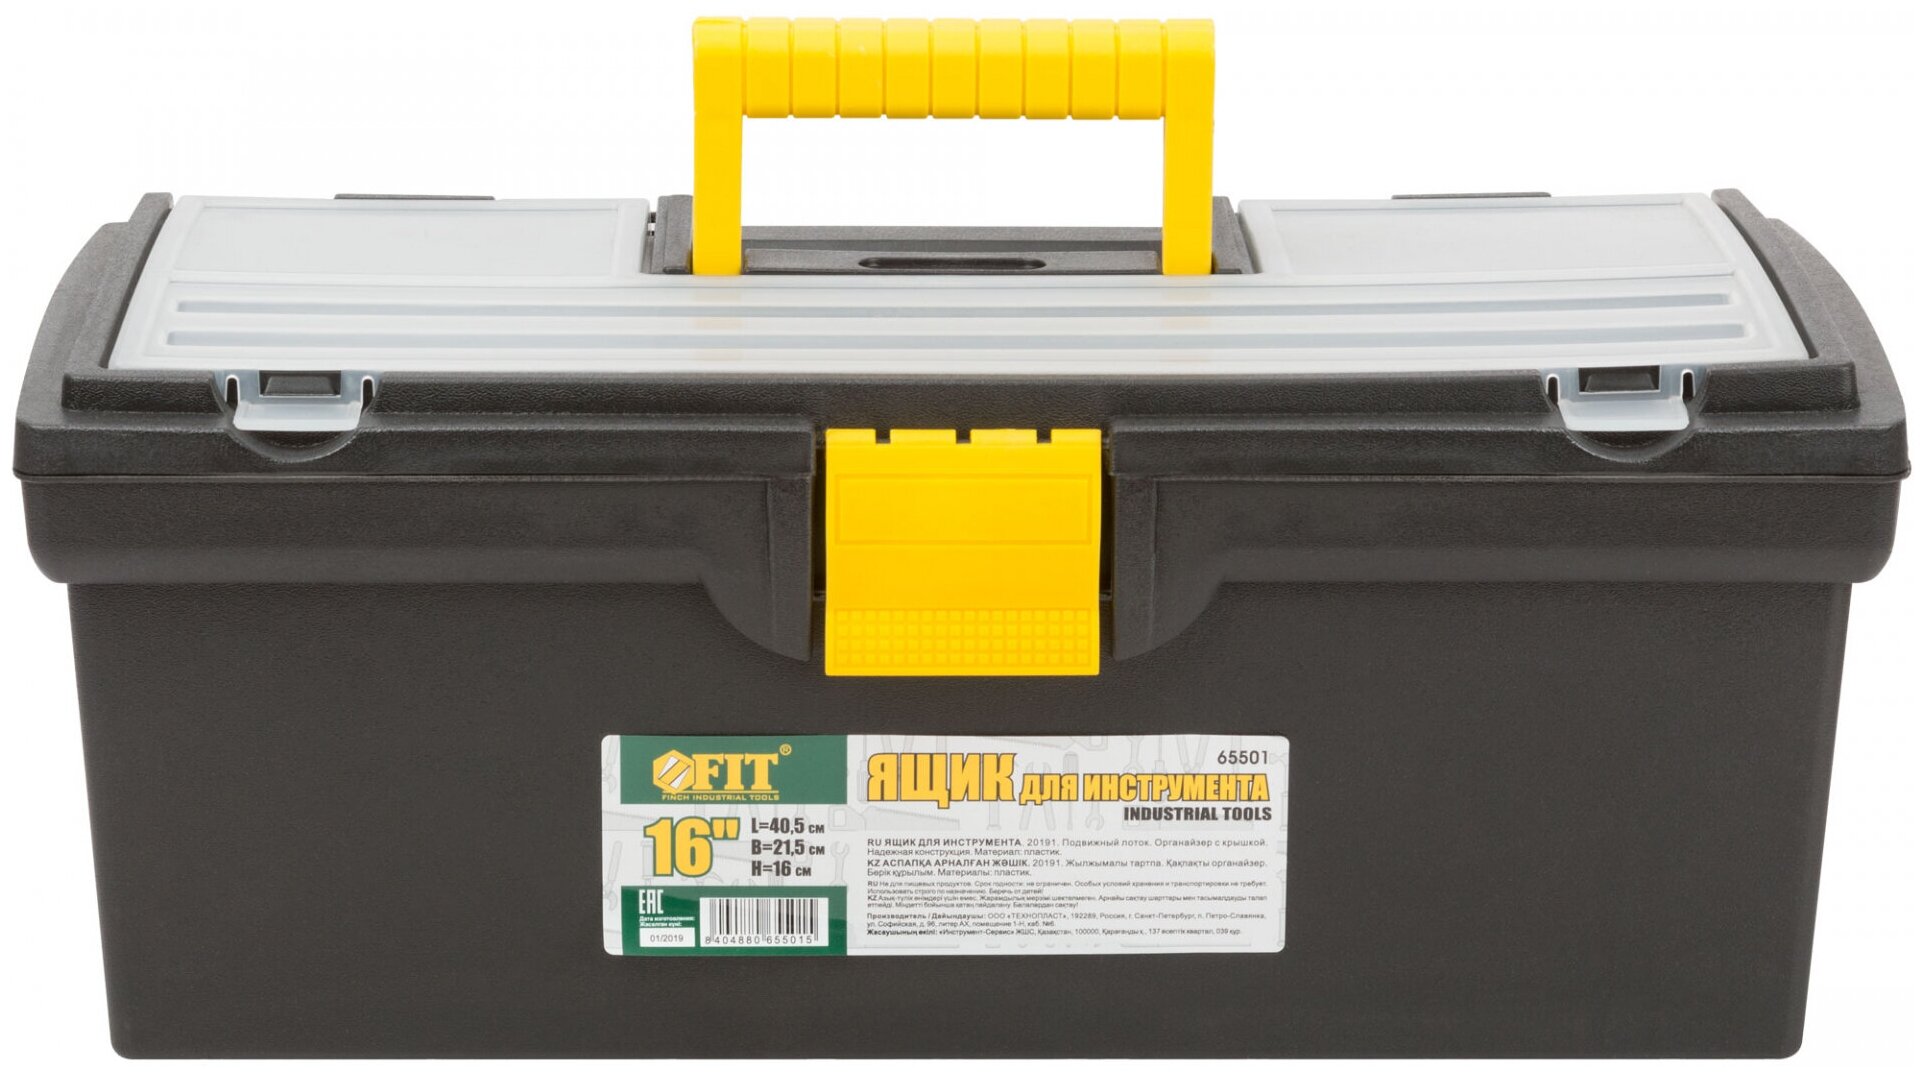 Ящик для инструмента пластиковый 16" (40,5 x 21,5 x 16 см), FIT 65501 (1 шт.)